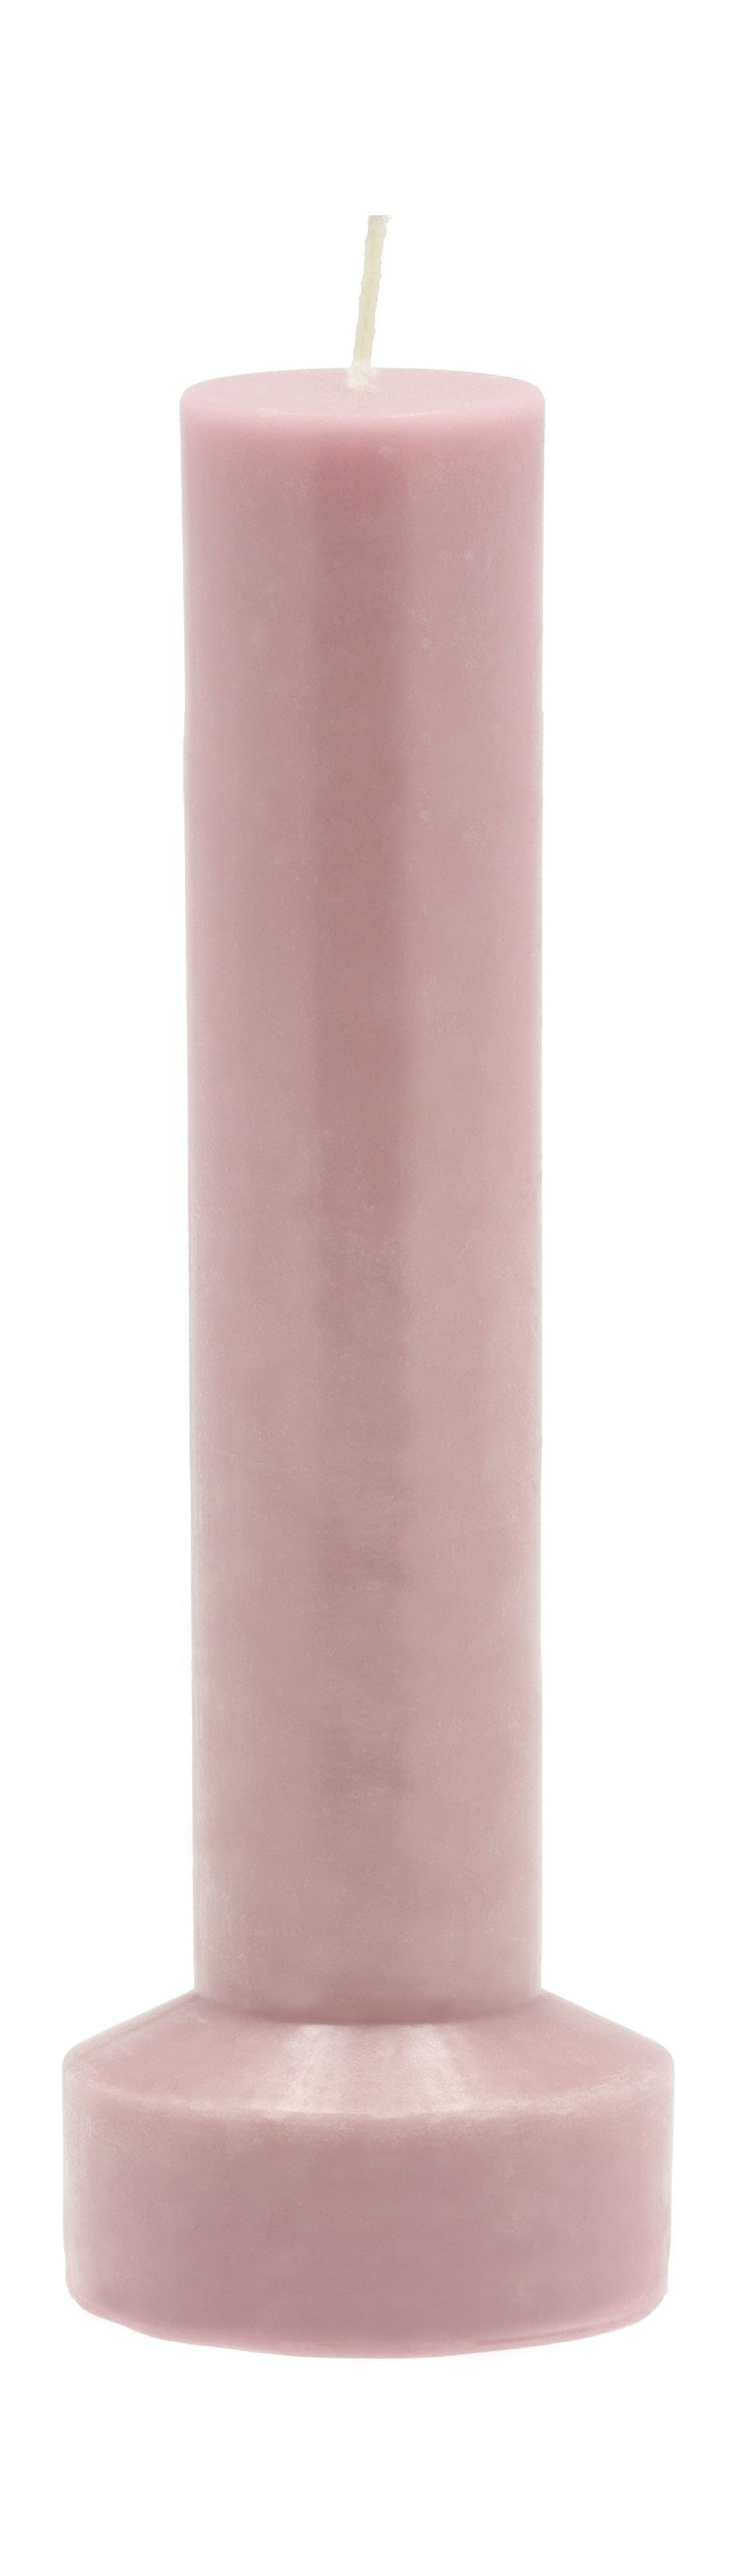 Villa Collection Styles Pillar Candela Ø 8 x 23 cm, rosa